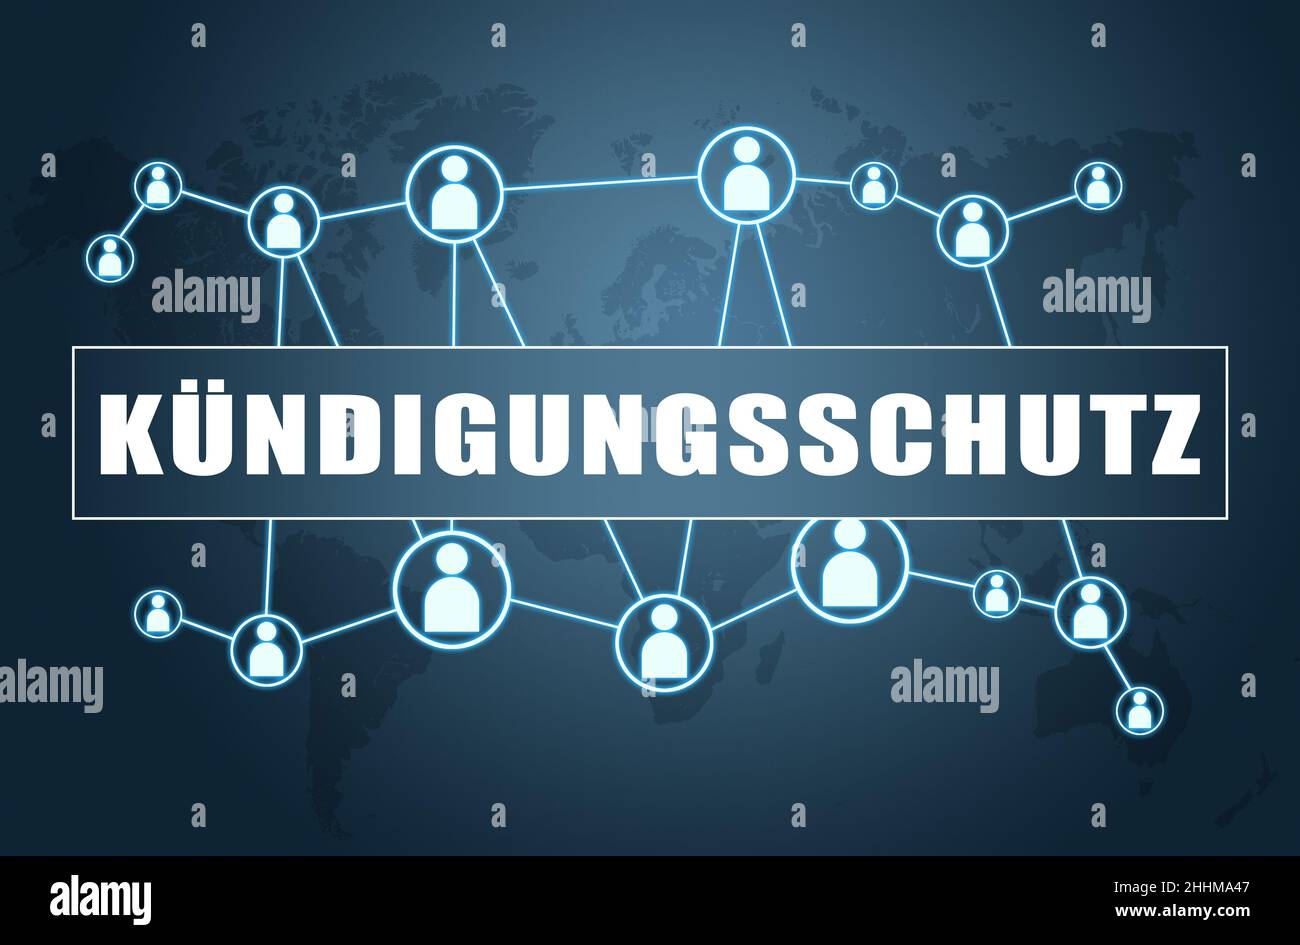 Kündigungsschutz - parola tedesca per la protezione contro il licenziamento - concetto di testo su sfondo blu con mappa del mondo e icone sociali. Foto Stock